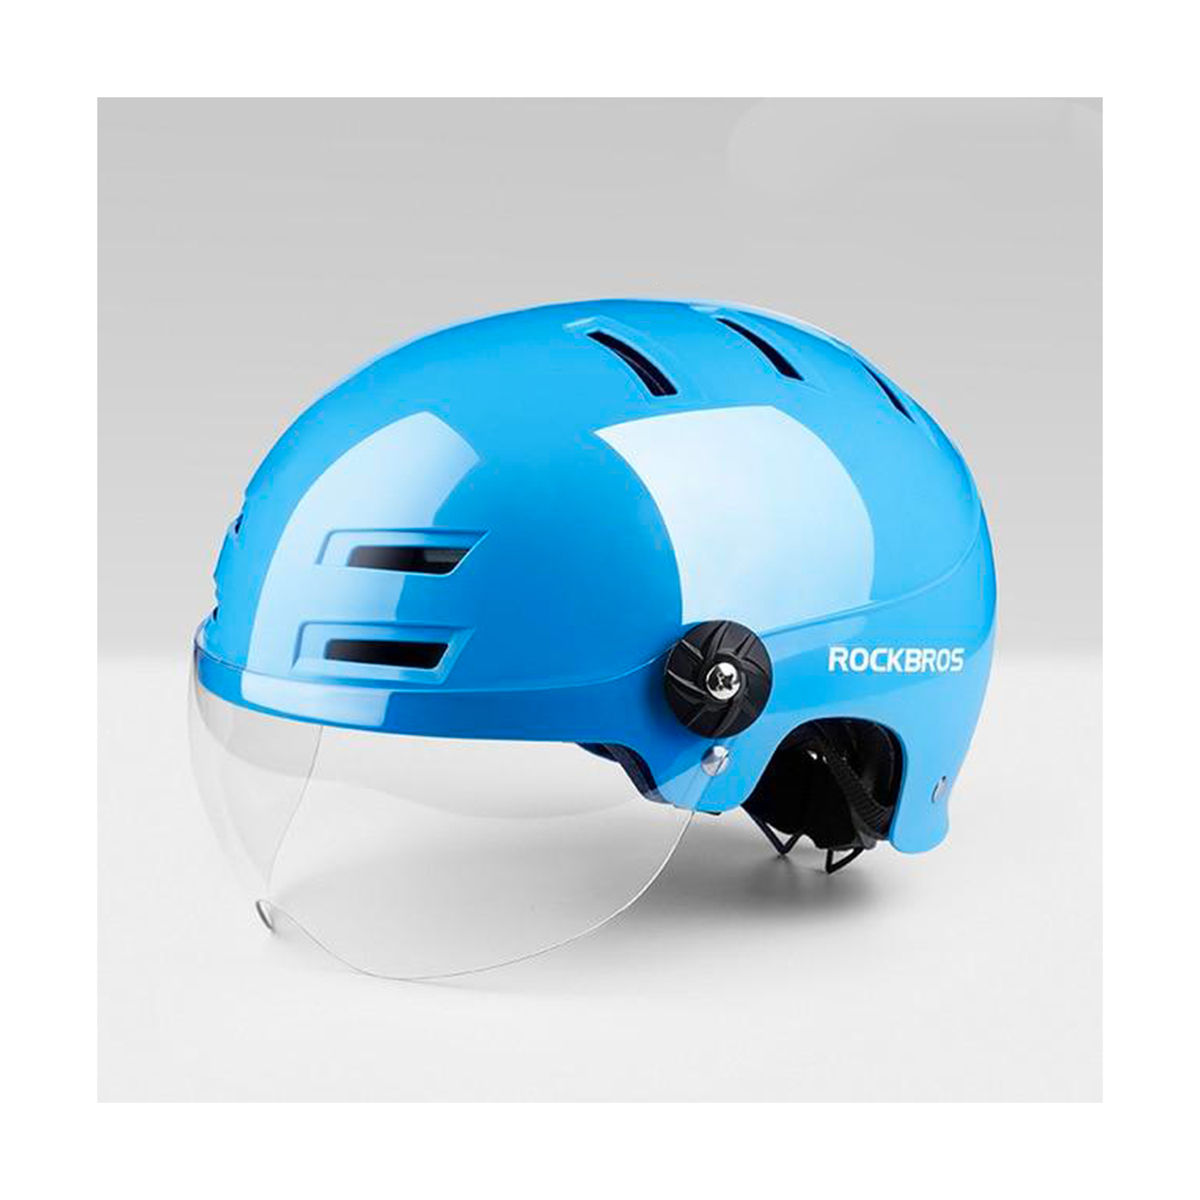 Rockbros Bicycle Helmet SH-01BL